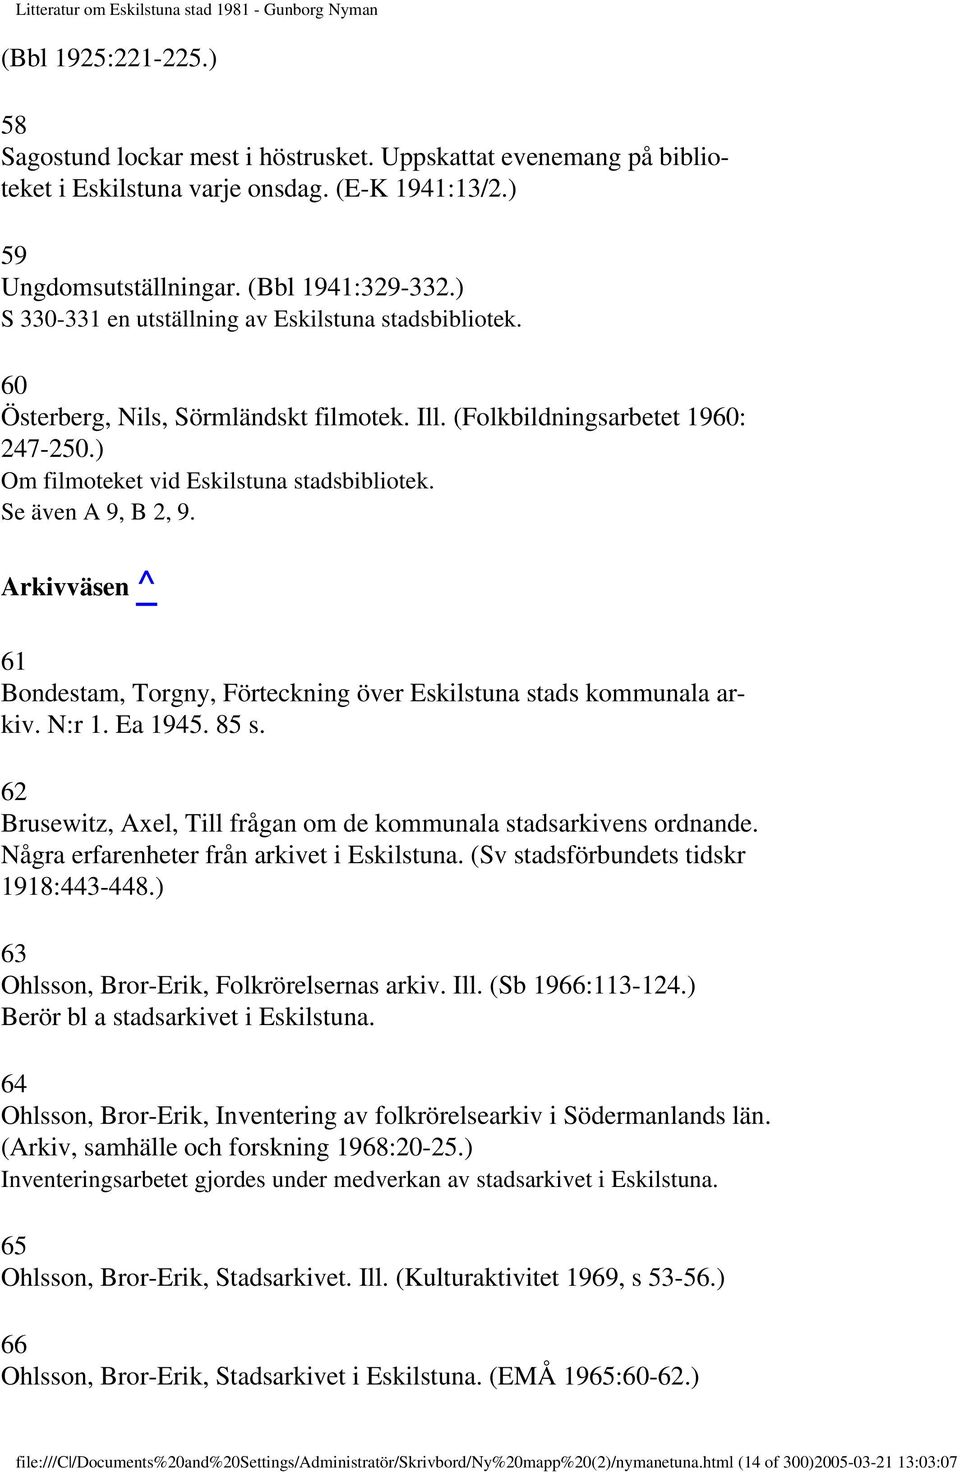 Se även A 9, B 2, 9. Arkivväsen ^ 61 Bondestam, Torgny, Förteckning över Eskilstuna stads kommunala arkiv. N:r 1. Ea 1945. 85 s. 62 Brusewitz, Axel, Till frågan om de kommunala stadsarkivens ordnande.